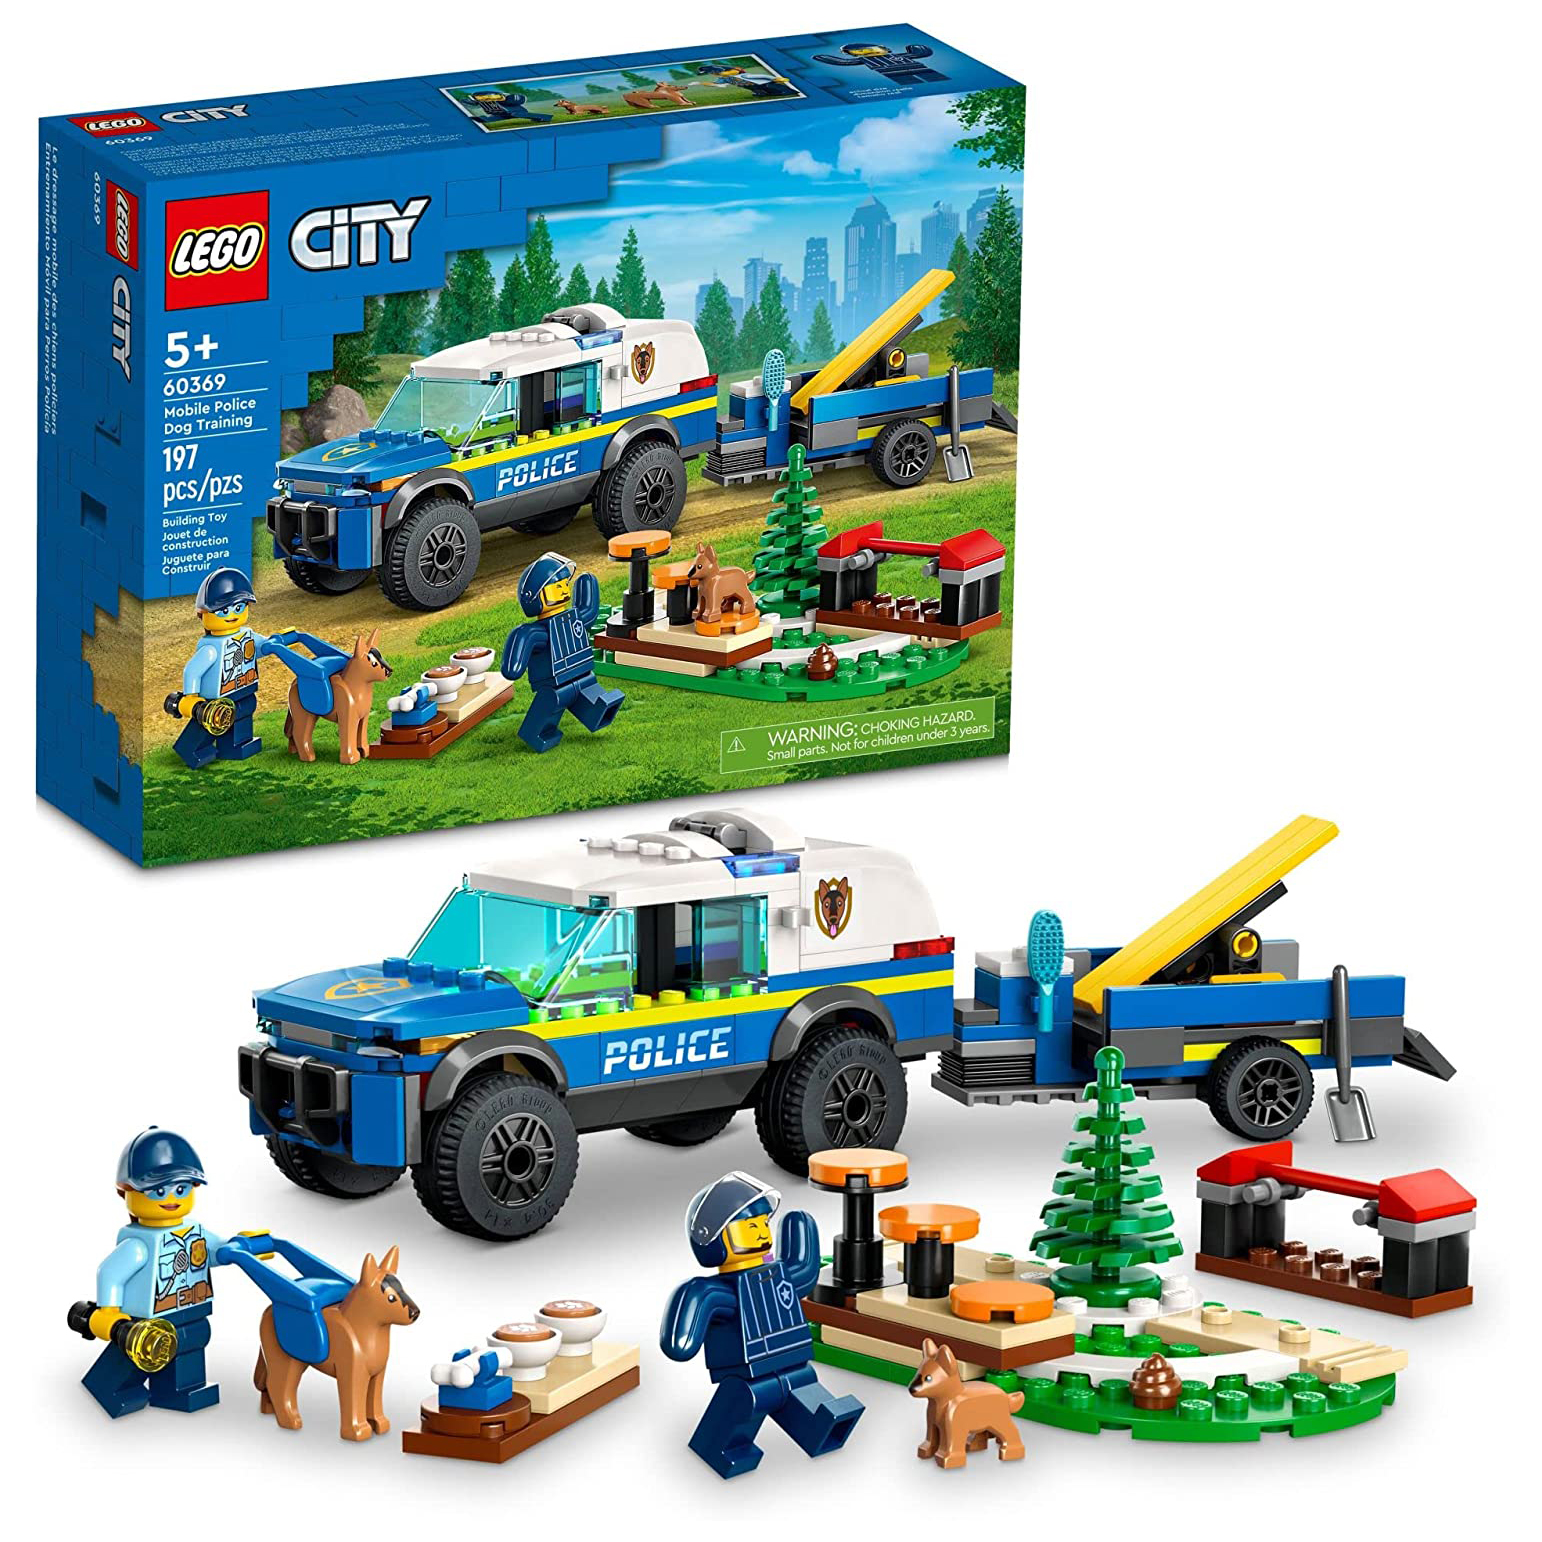 Конструктор LEGO City Дрессировка полицейской собаки на выезде, 197 деталей, 60369 lego city книжка картинка строительная площадка жми тяни и толкай книга